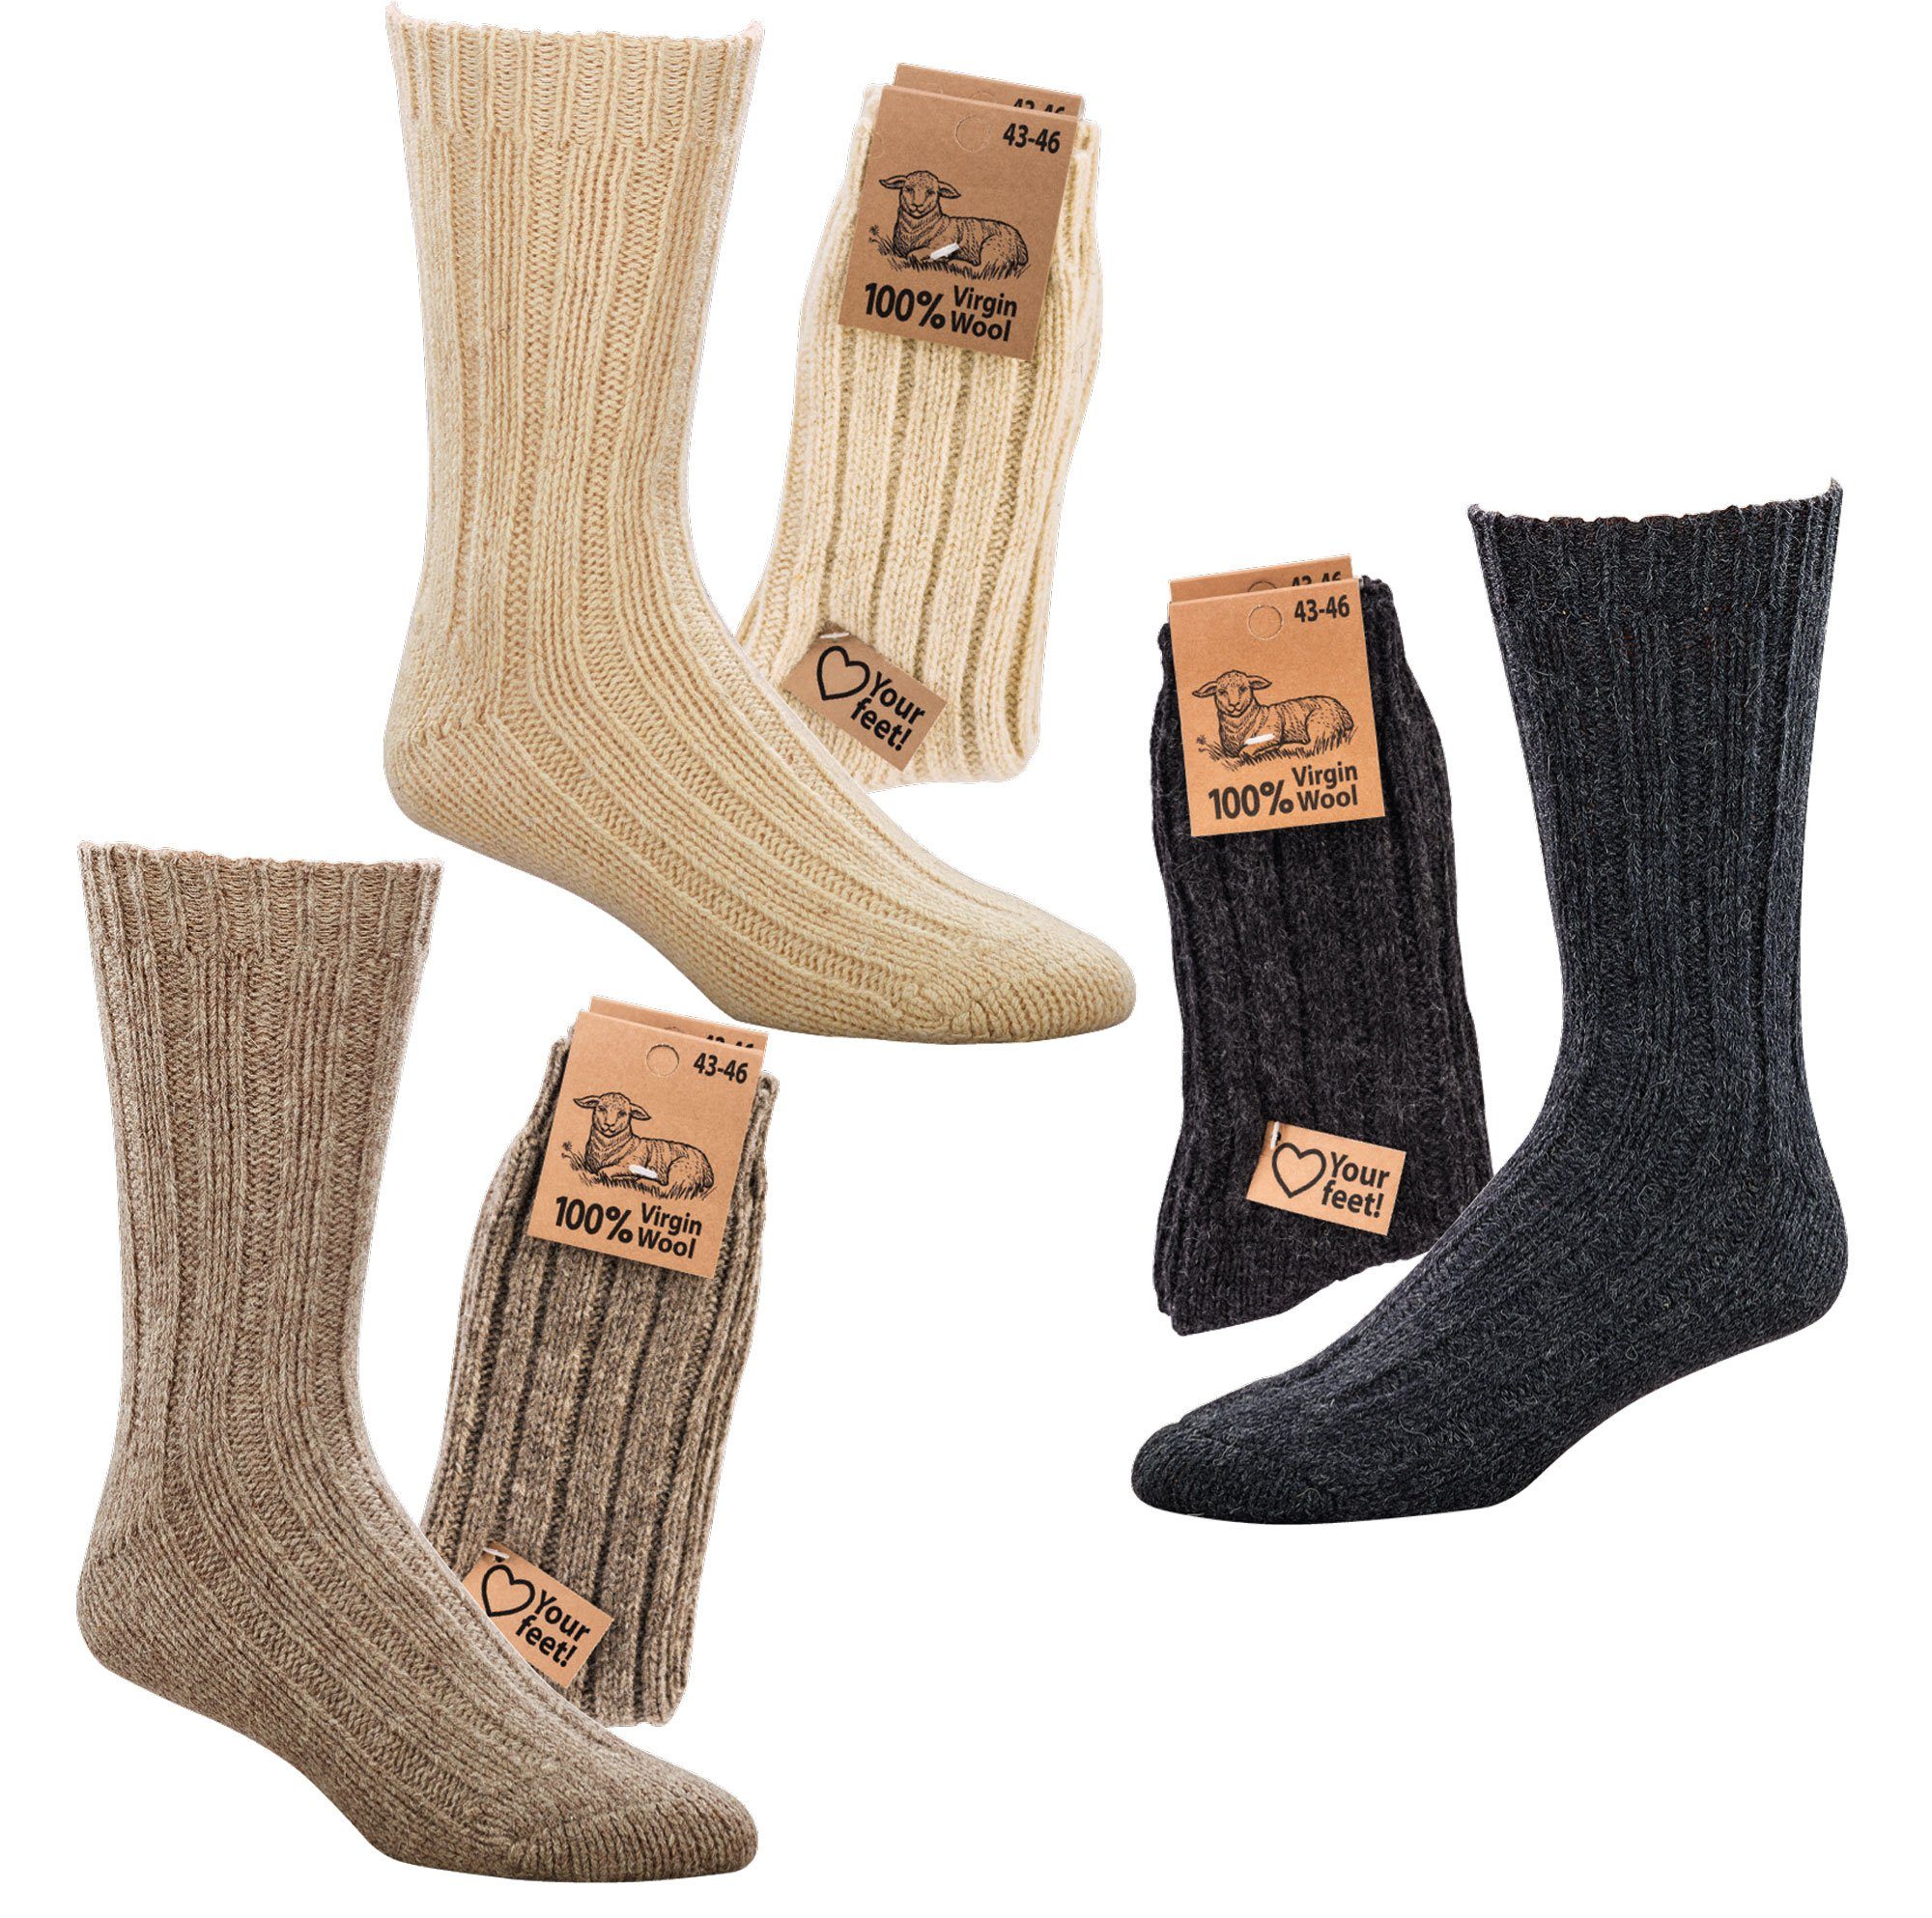 Socks 4 Fun Wowerat Socken Warme Wollsocken 100% "Virgin Wool" Grobstrick Schafwolle (2 Paar) anthrazit